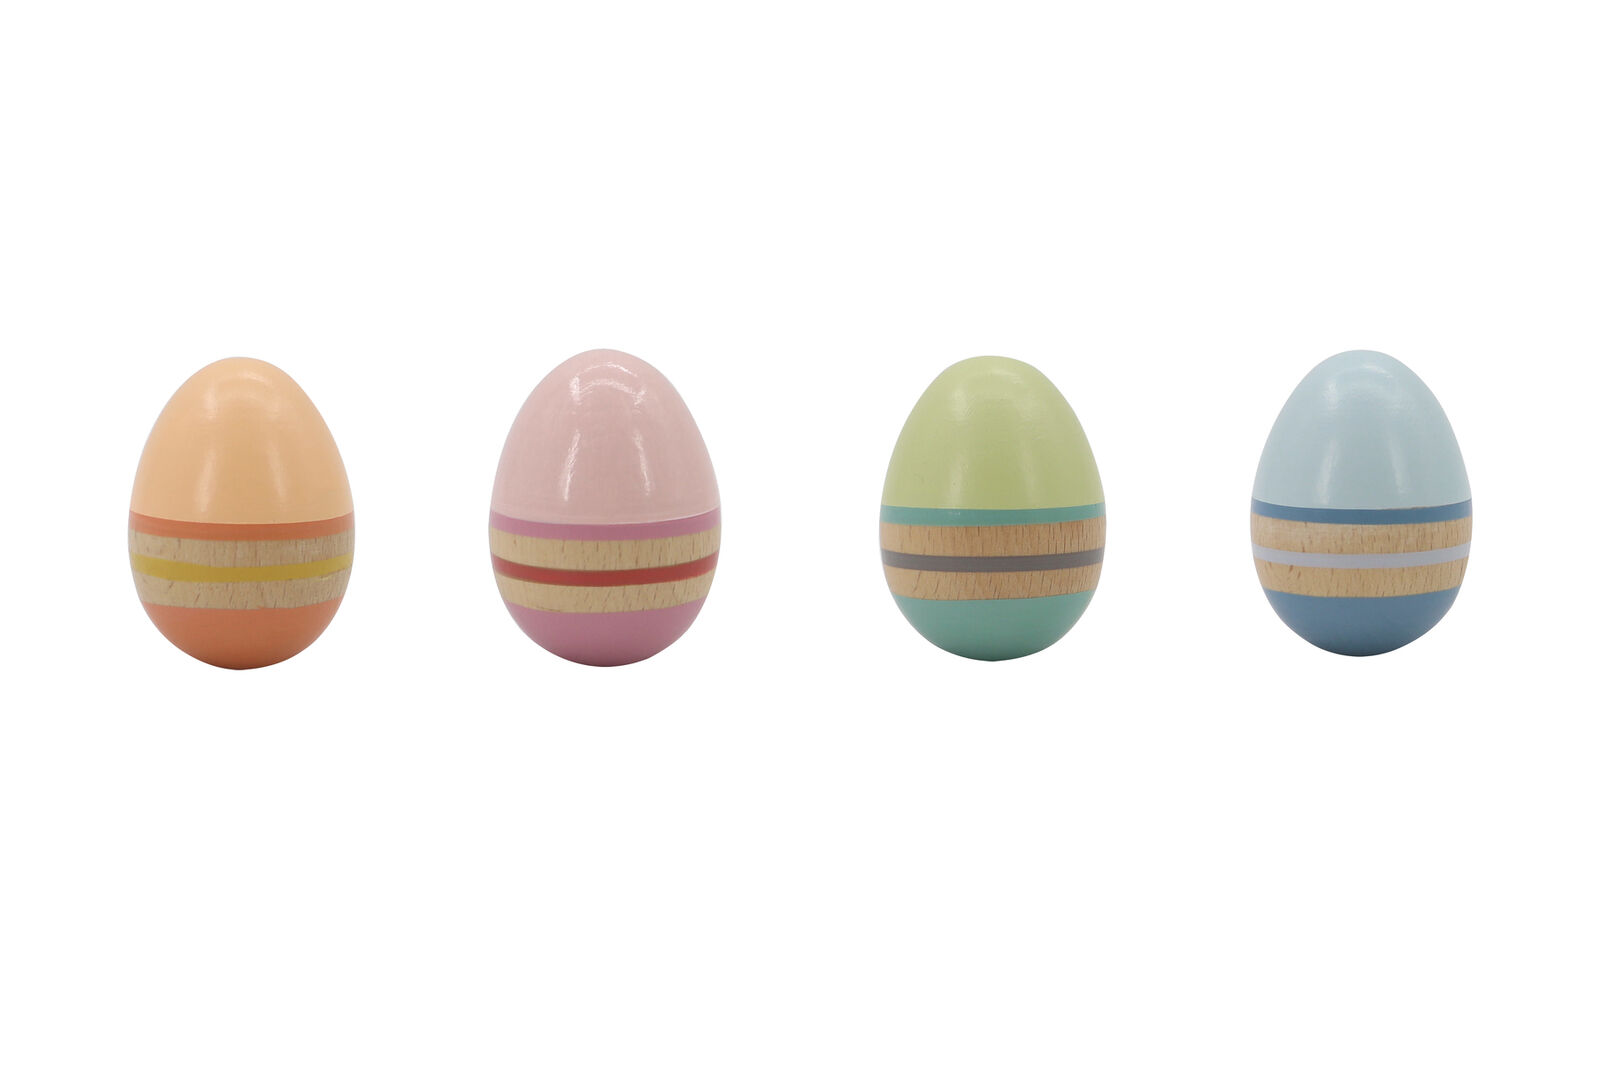 Wooden Egg Shaker - Select